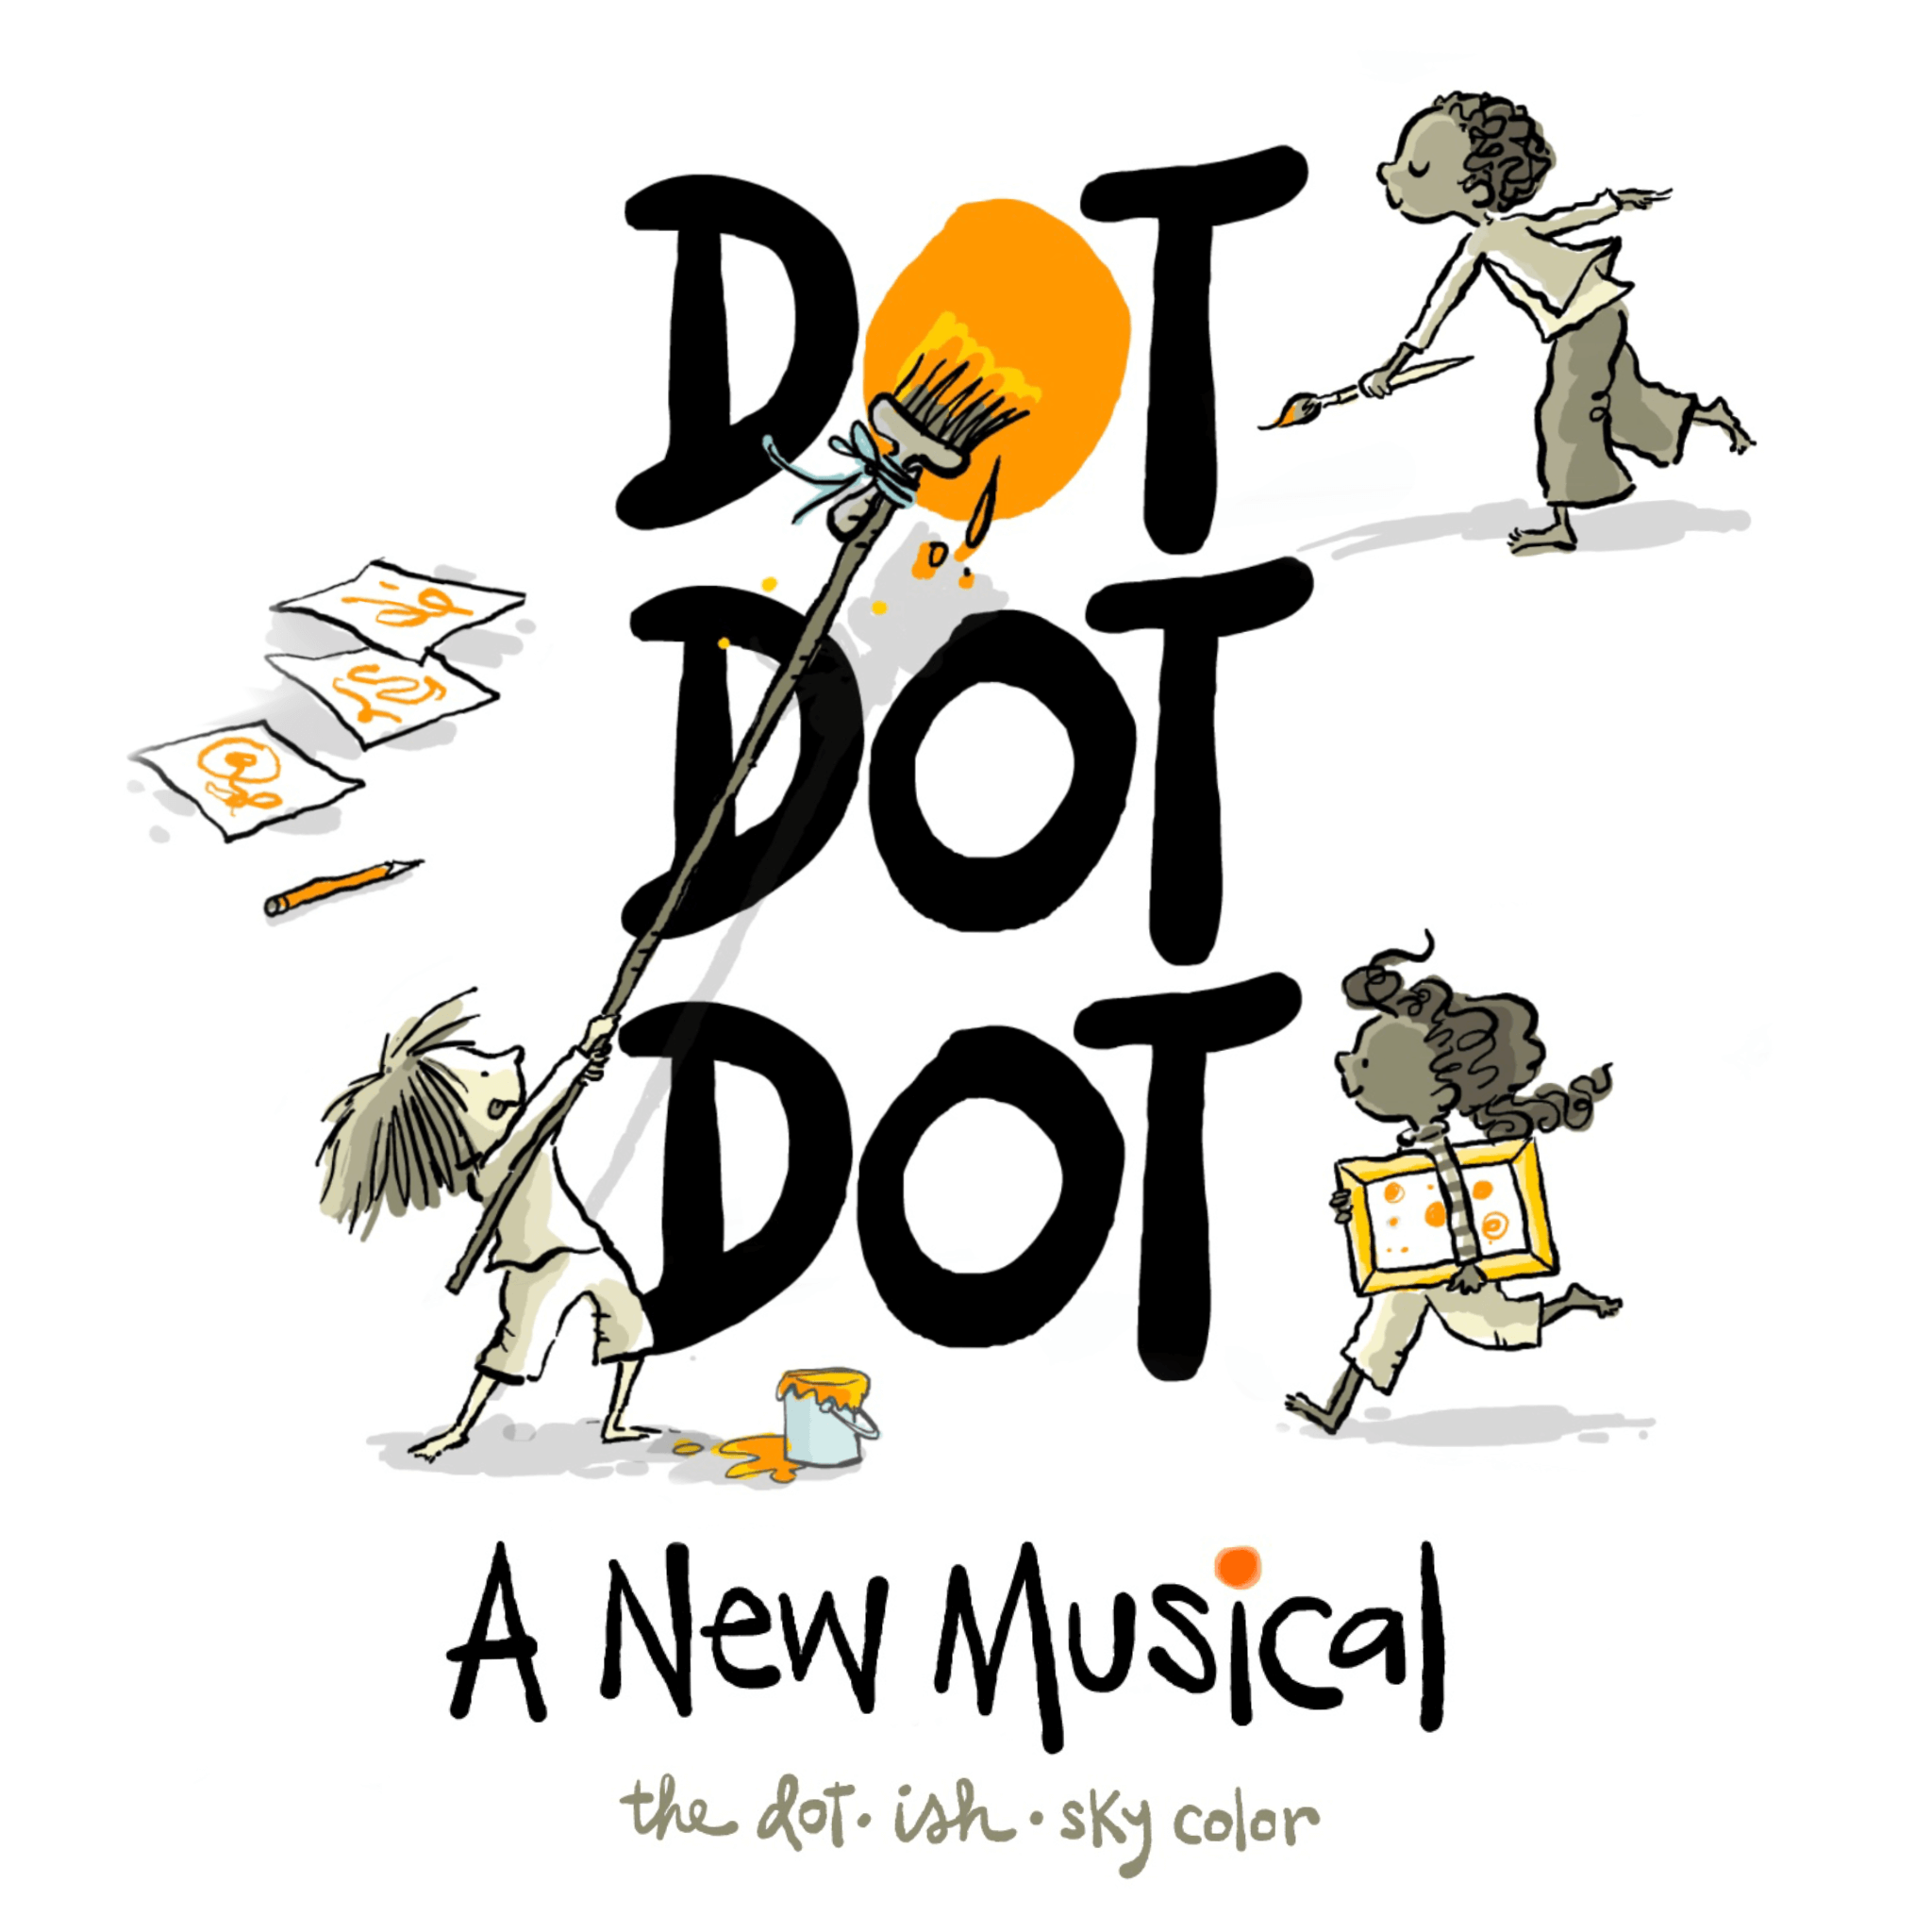 Dot Dot Dot: A New Musical